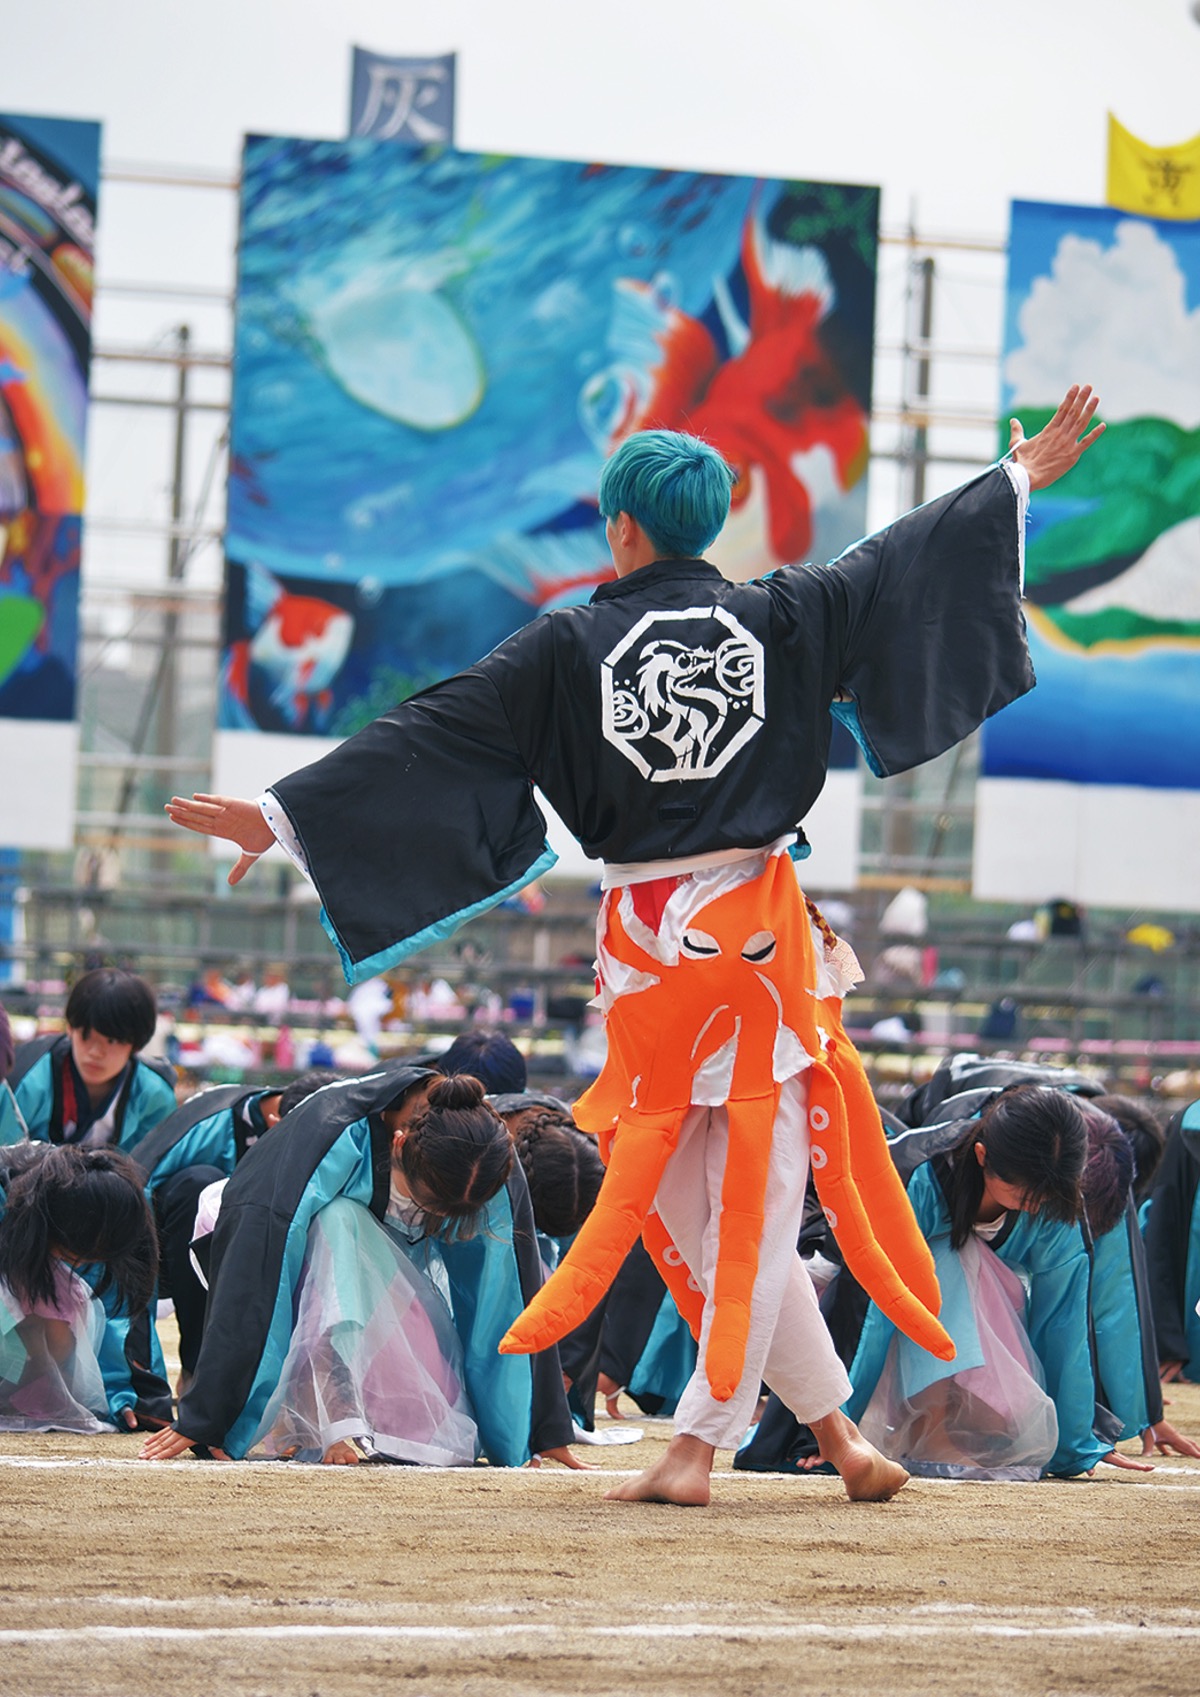 湘南高校創立100周年 自主性の象徴 体育祭 結束高め １年かけ準備 藤沢 タウンニュース